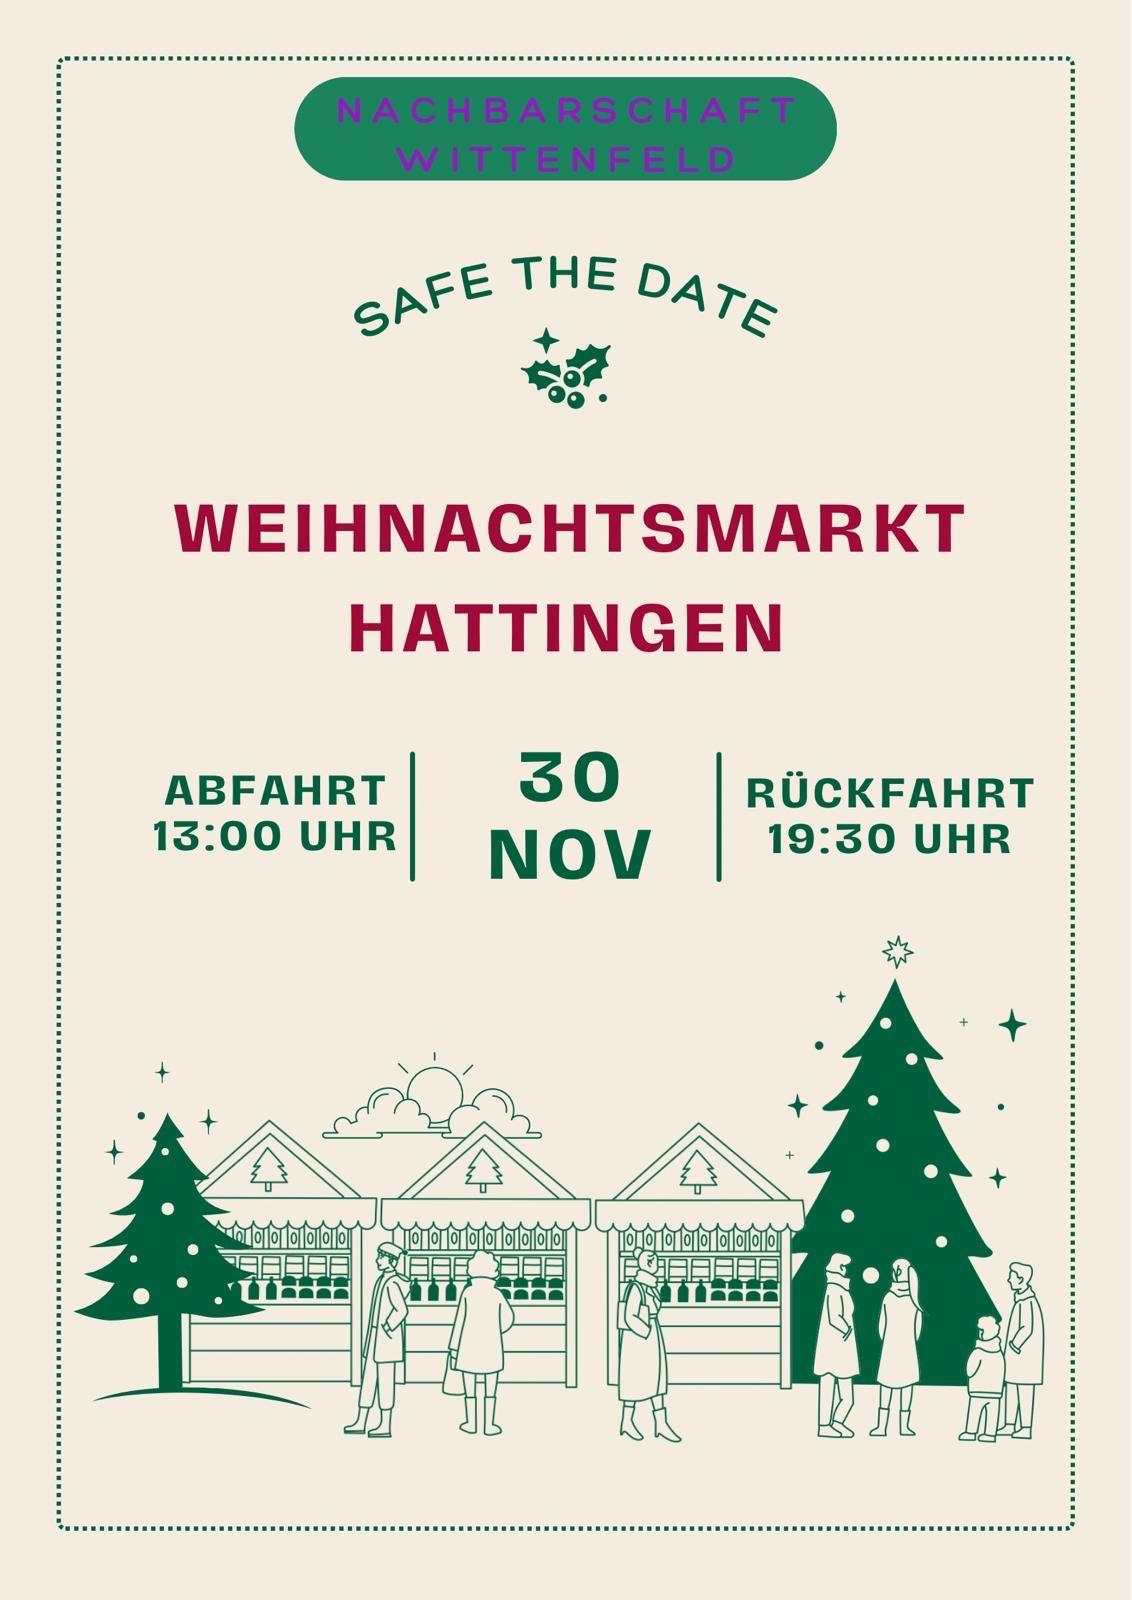 Save the date: Fahrt zum Hattinger Weihnachtsmarkt am 30. November